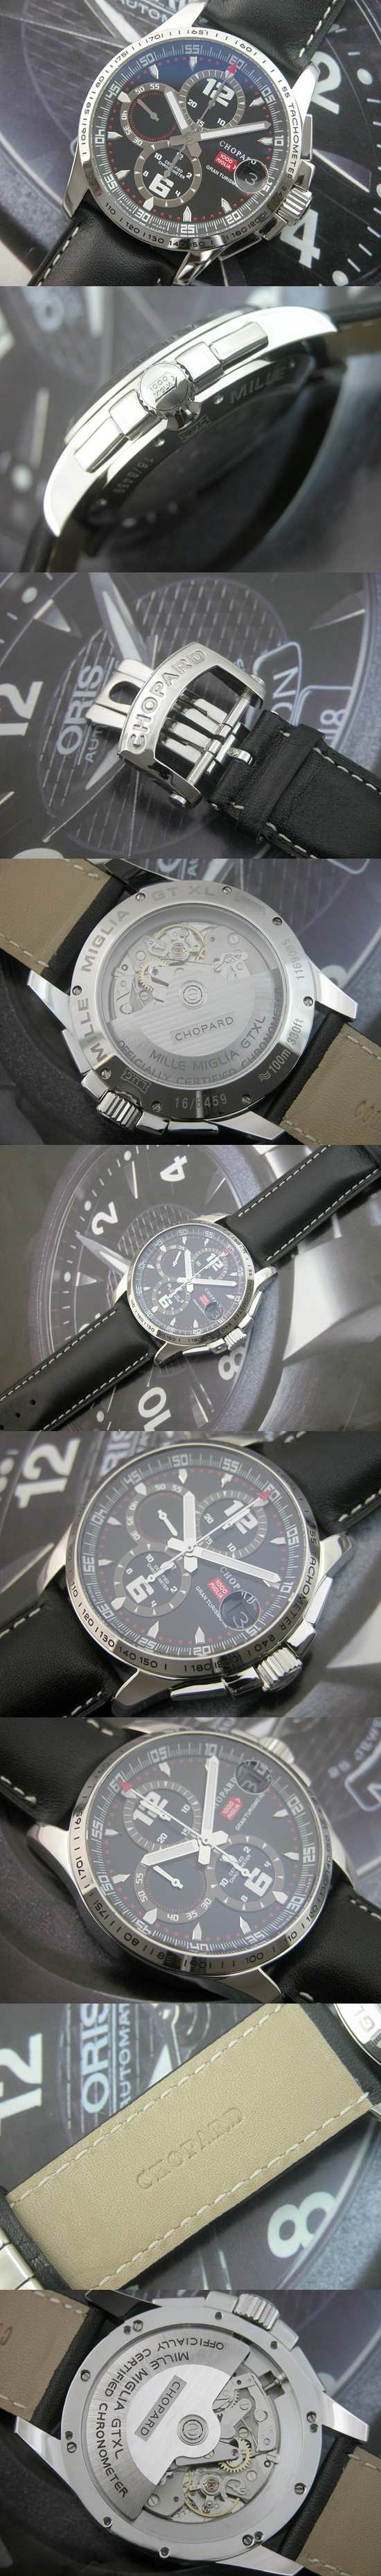 おしゃれなブランド時計がショパール-CHOPARD-ミッレミリア-CHOPARD-A-010 男性用腕時計を提供します.